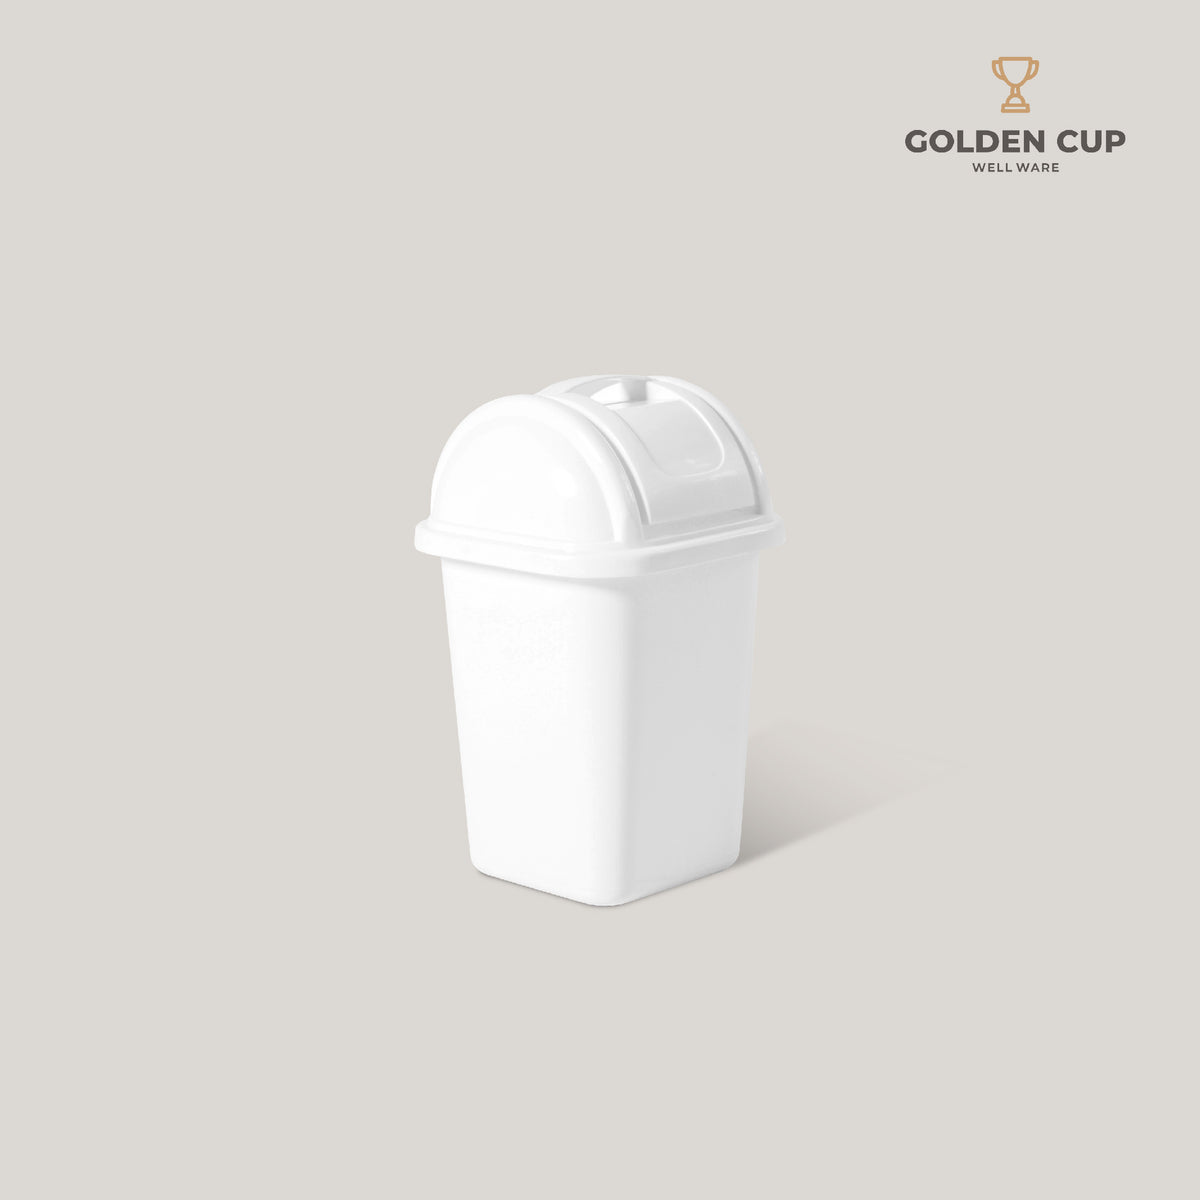 GOLDEN CUP ถังขยะฝาสวิง 4 ลิตร AG210